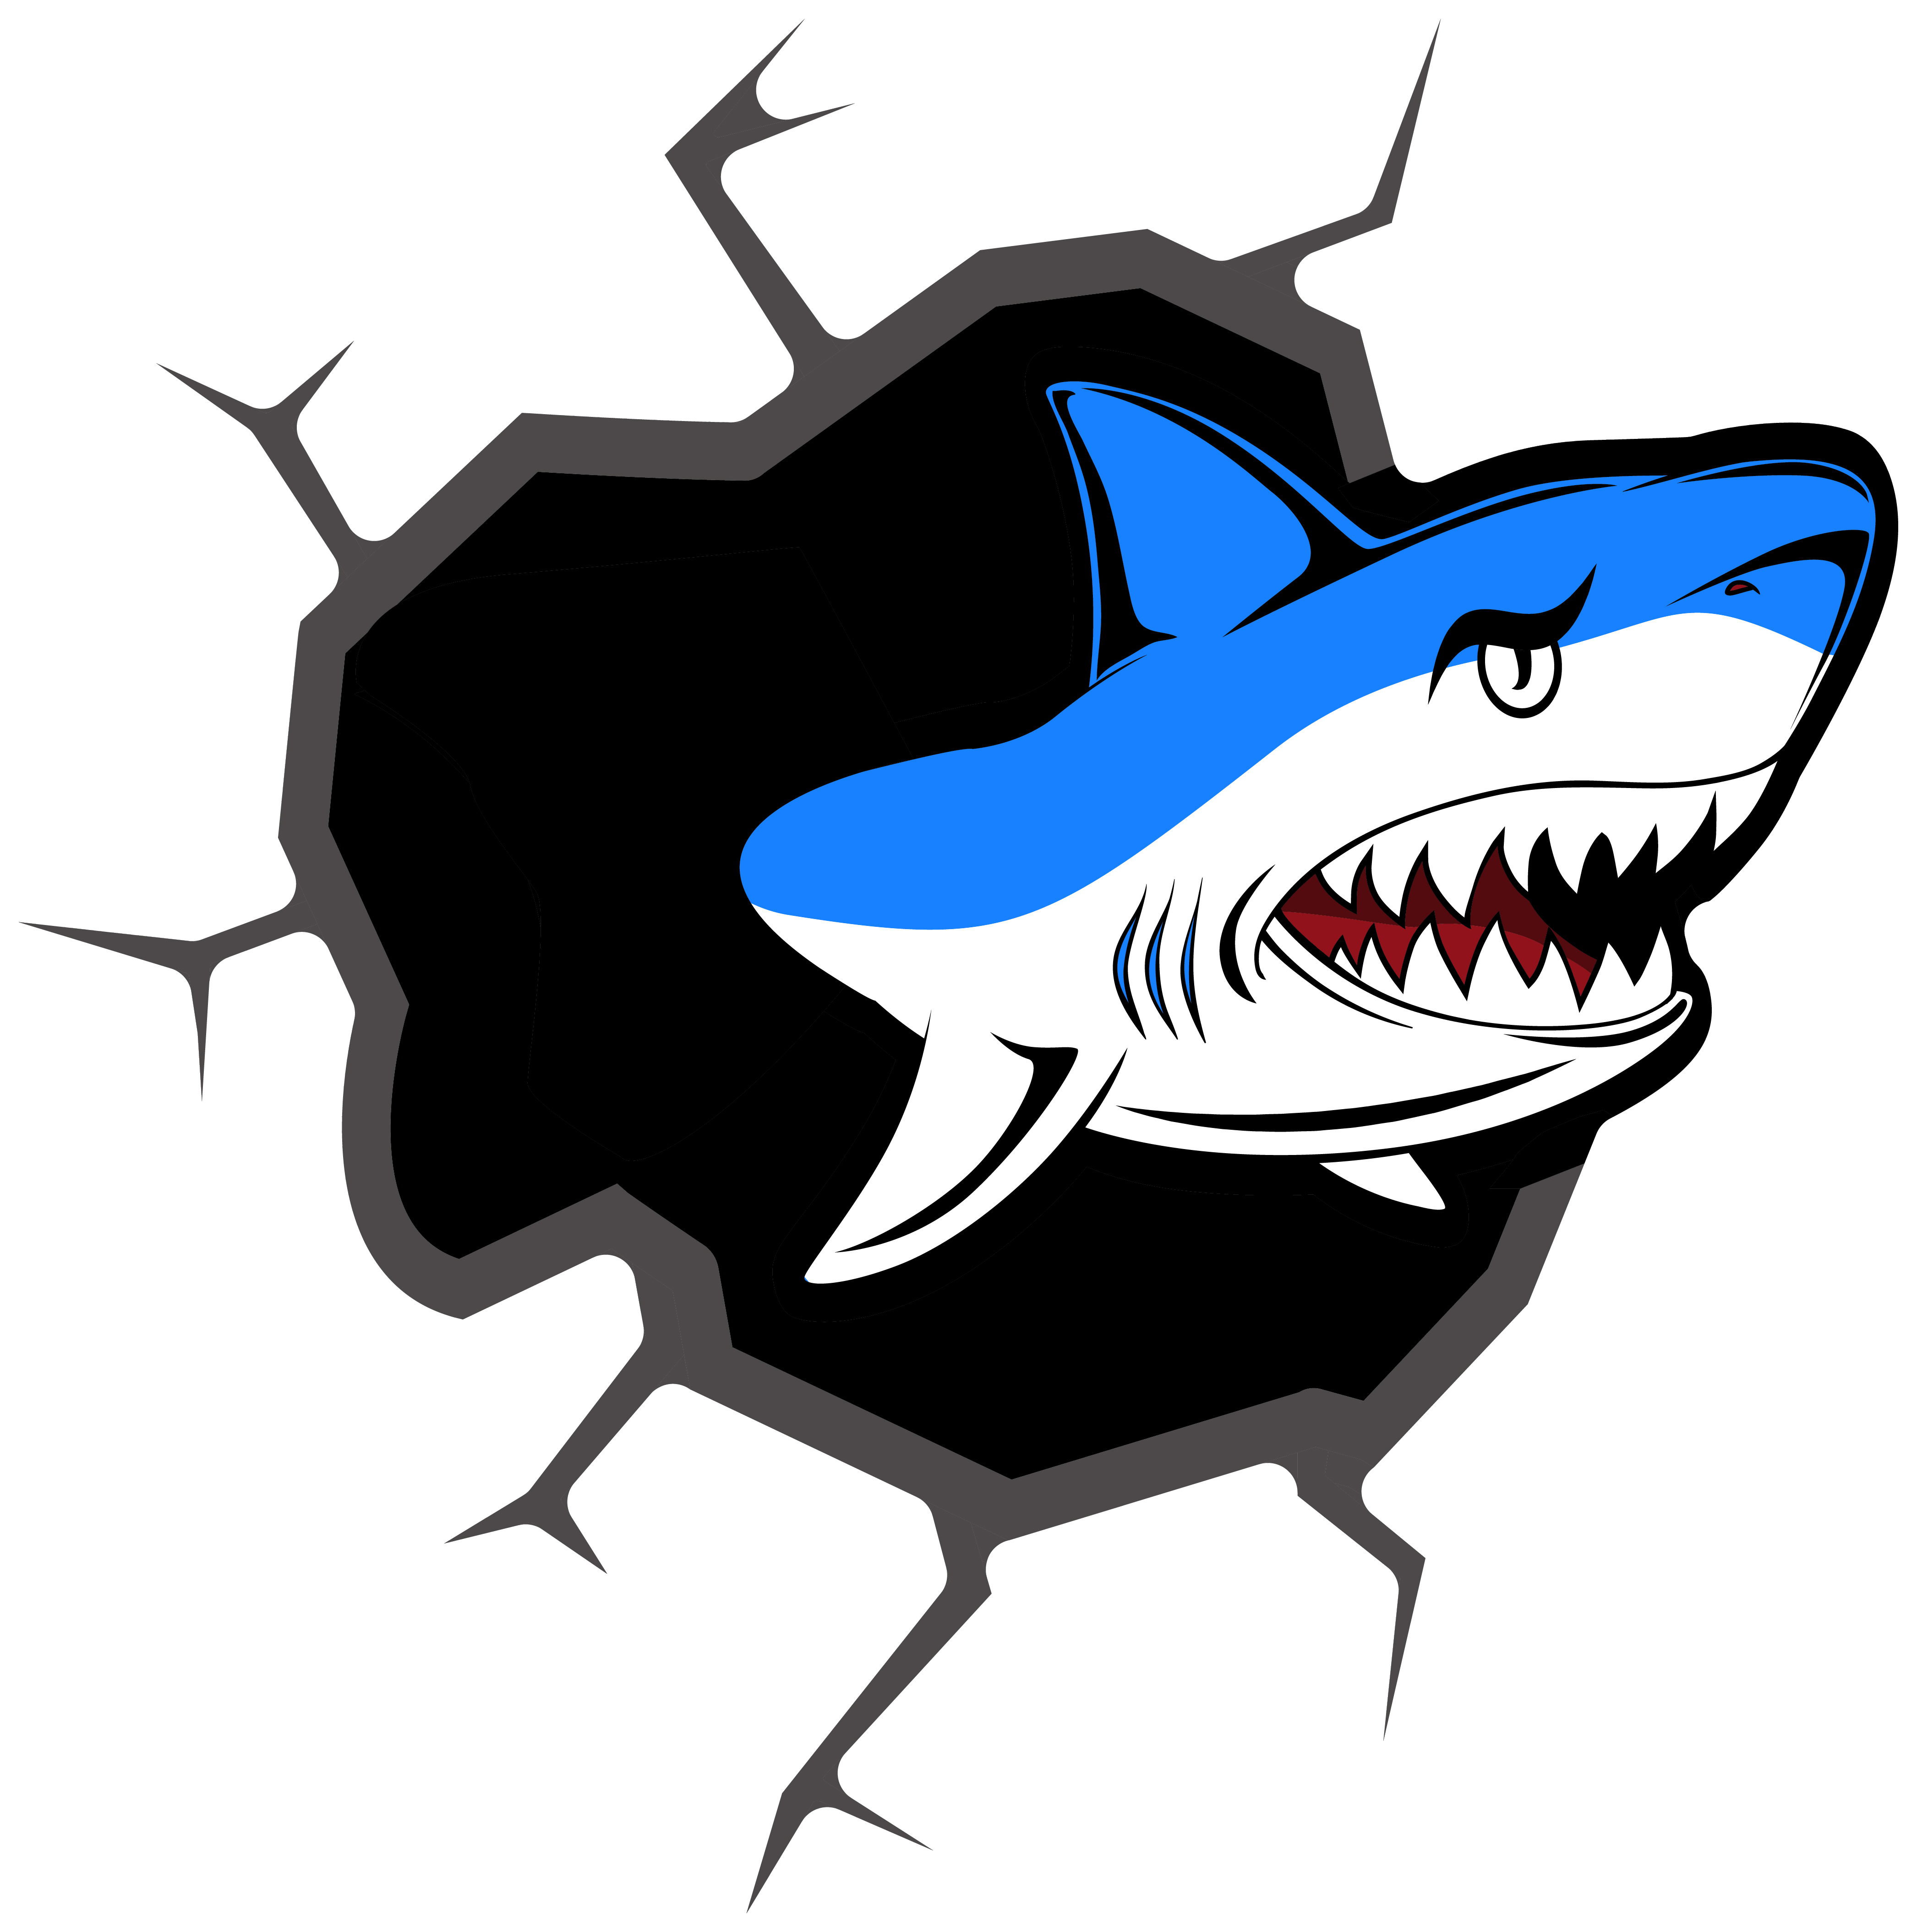 4x Aufkleber Shark Hai 5x5 cm für Auto KFZ Handy Laptop Haifisch Sticker